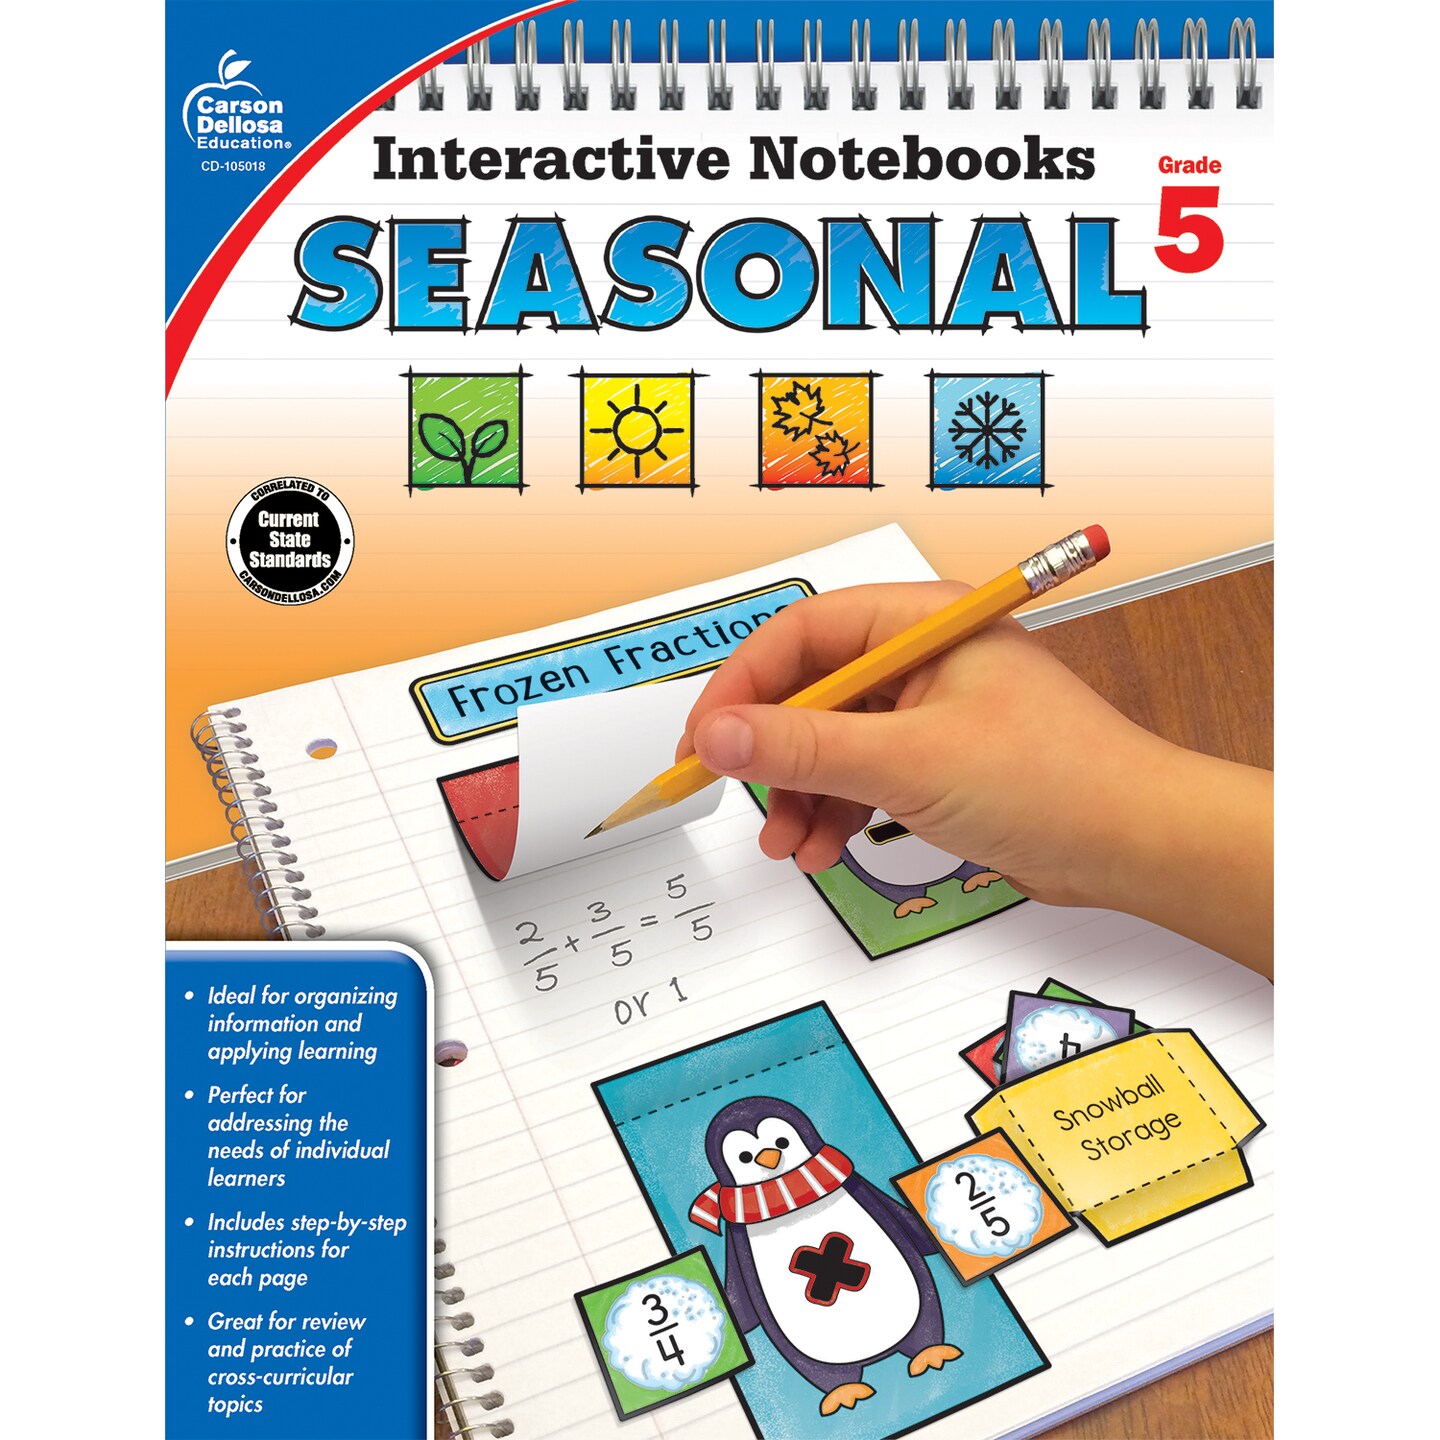 Carson Dellosa Interactive Notebooks Seasonal, Grade 5 Resource Book